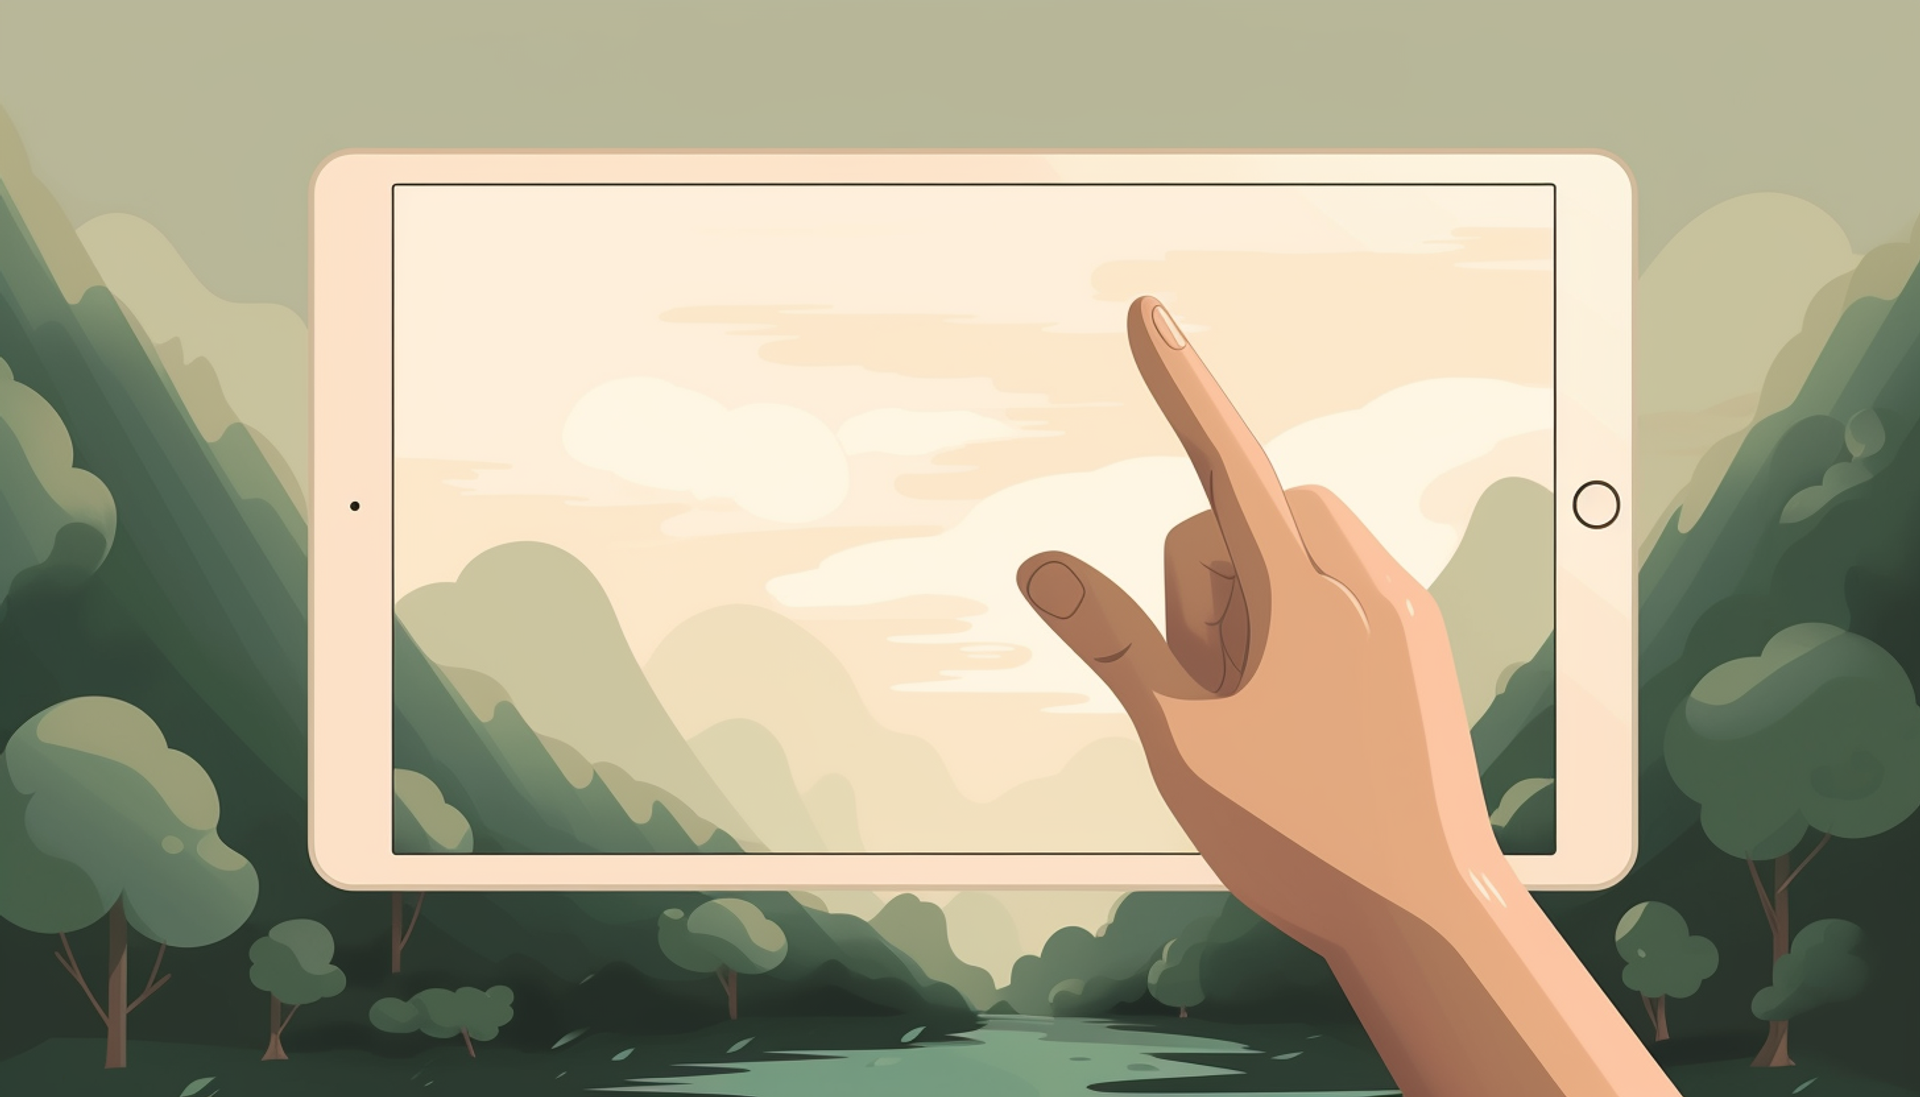 Hånd som rører med tommelen og pekefingeren mot en ipadskjerm, illustrasjon.